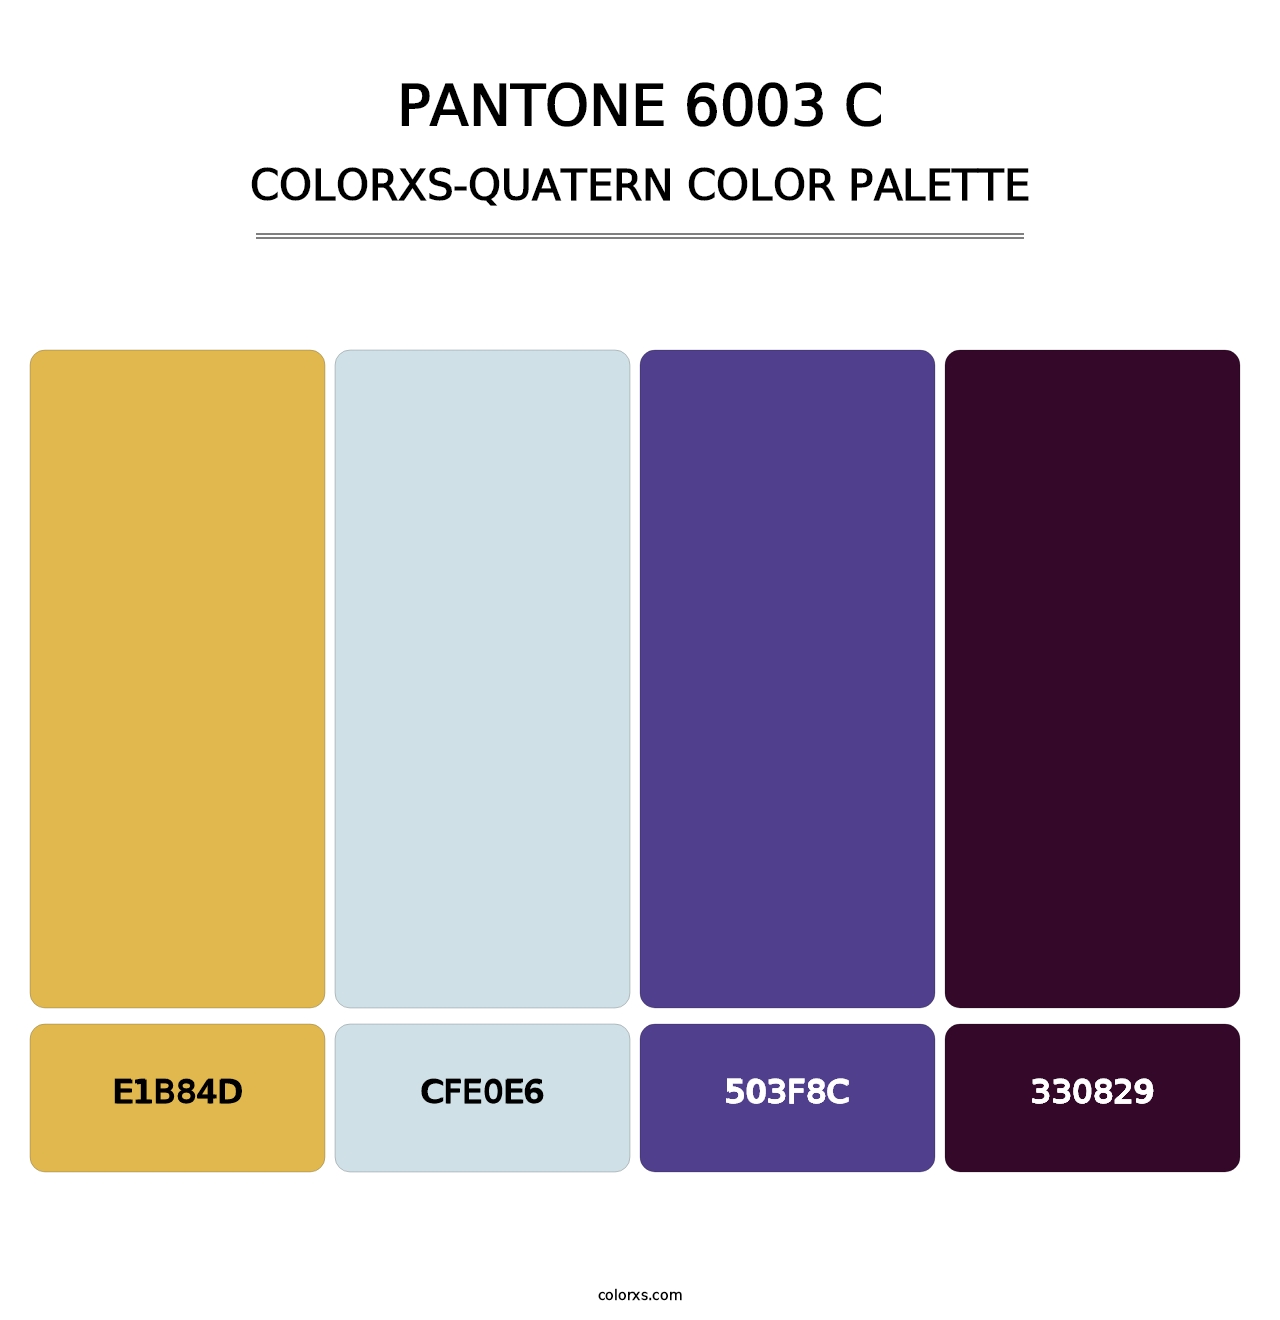 PANTONE 6003 C - Colorxs Quatern Palette